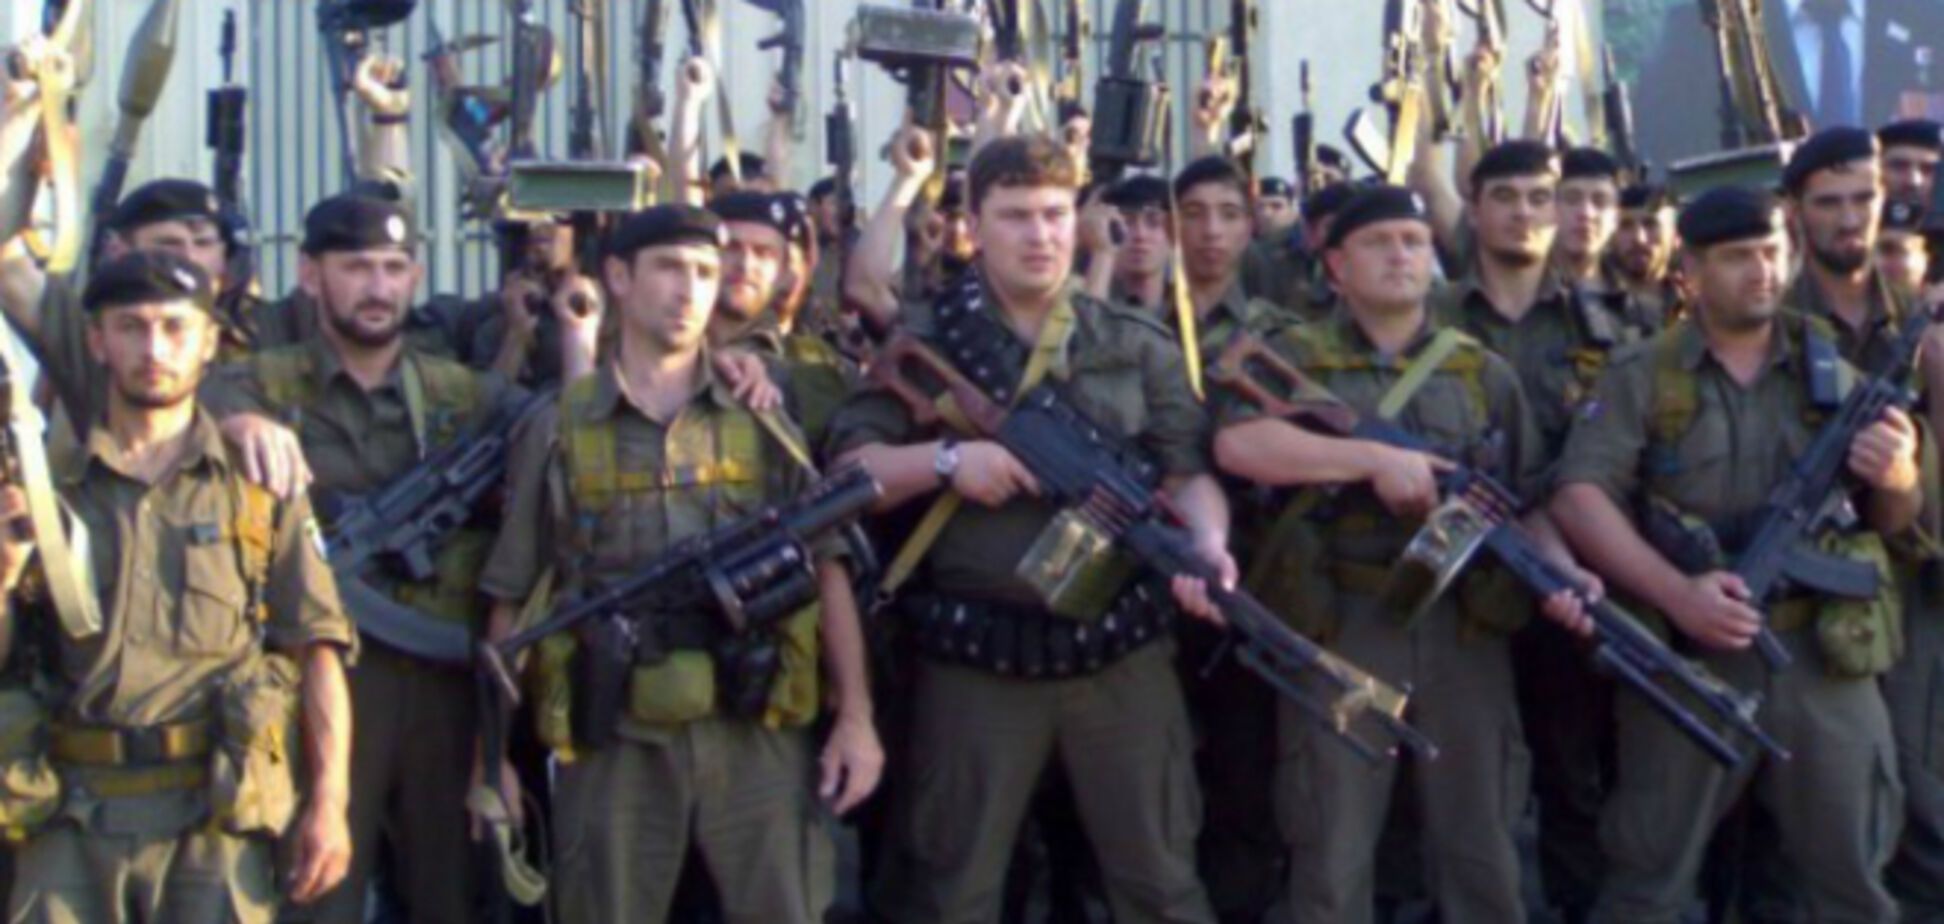 Когда деньги Путина закончатся, 20 тыс. вооруженных 'кадыровцев' пойдут на Москву - Немцов